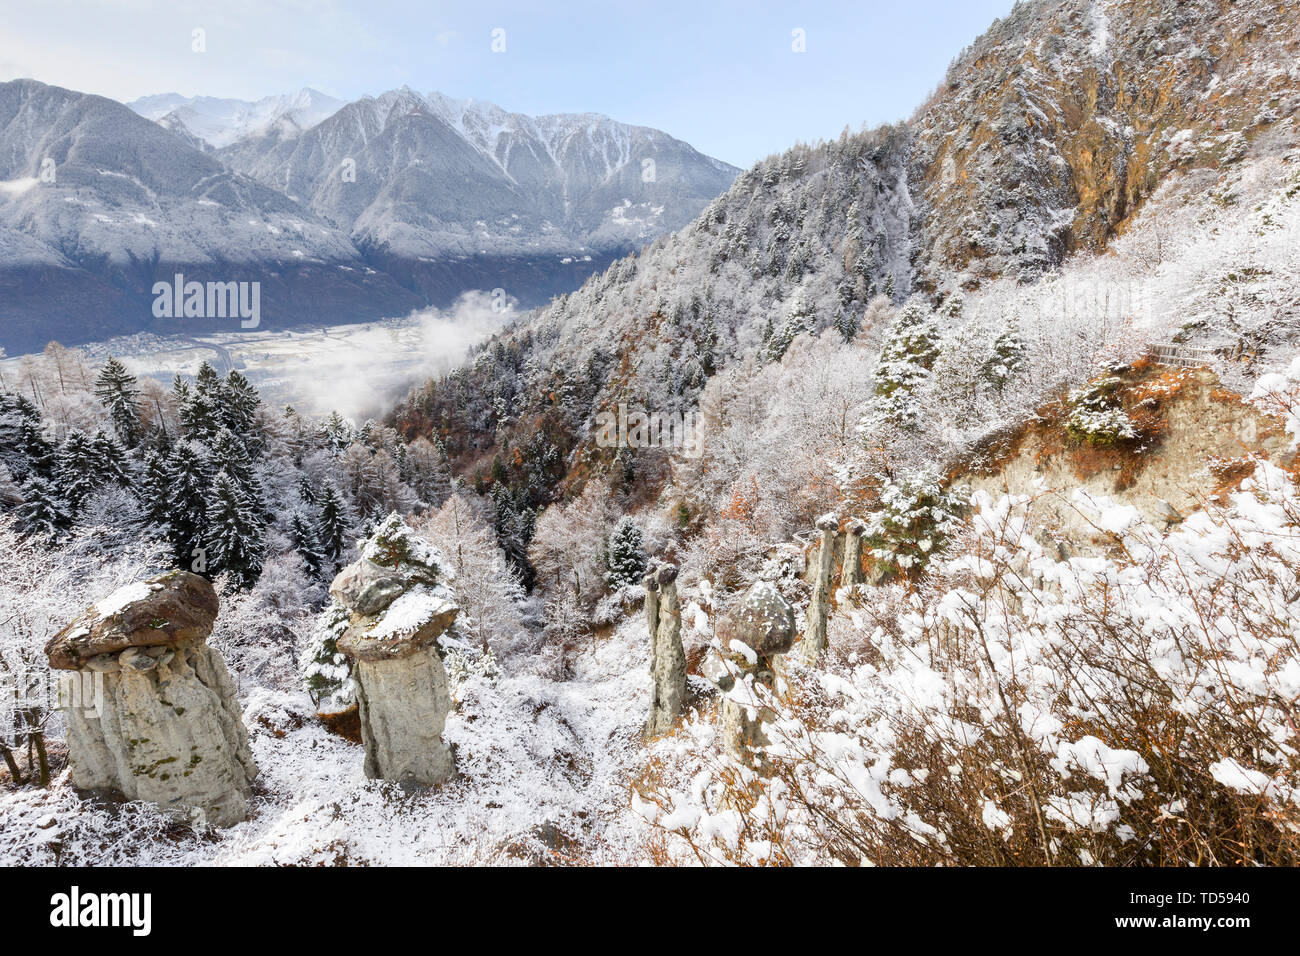 Les cheminées de Postalesio après une chute de neige, Postalesio, Valtellina, Lombardie, Italie, Europe Banque D'Images